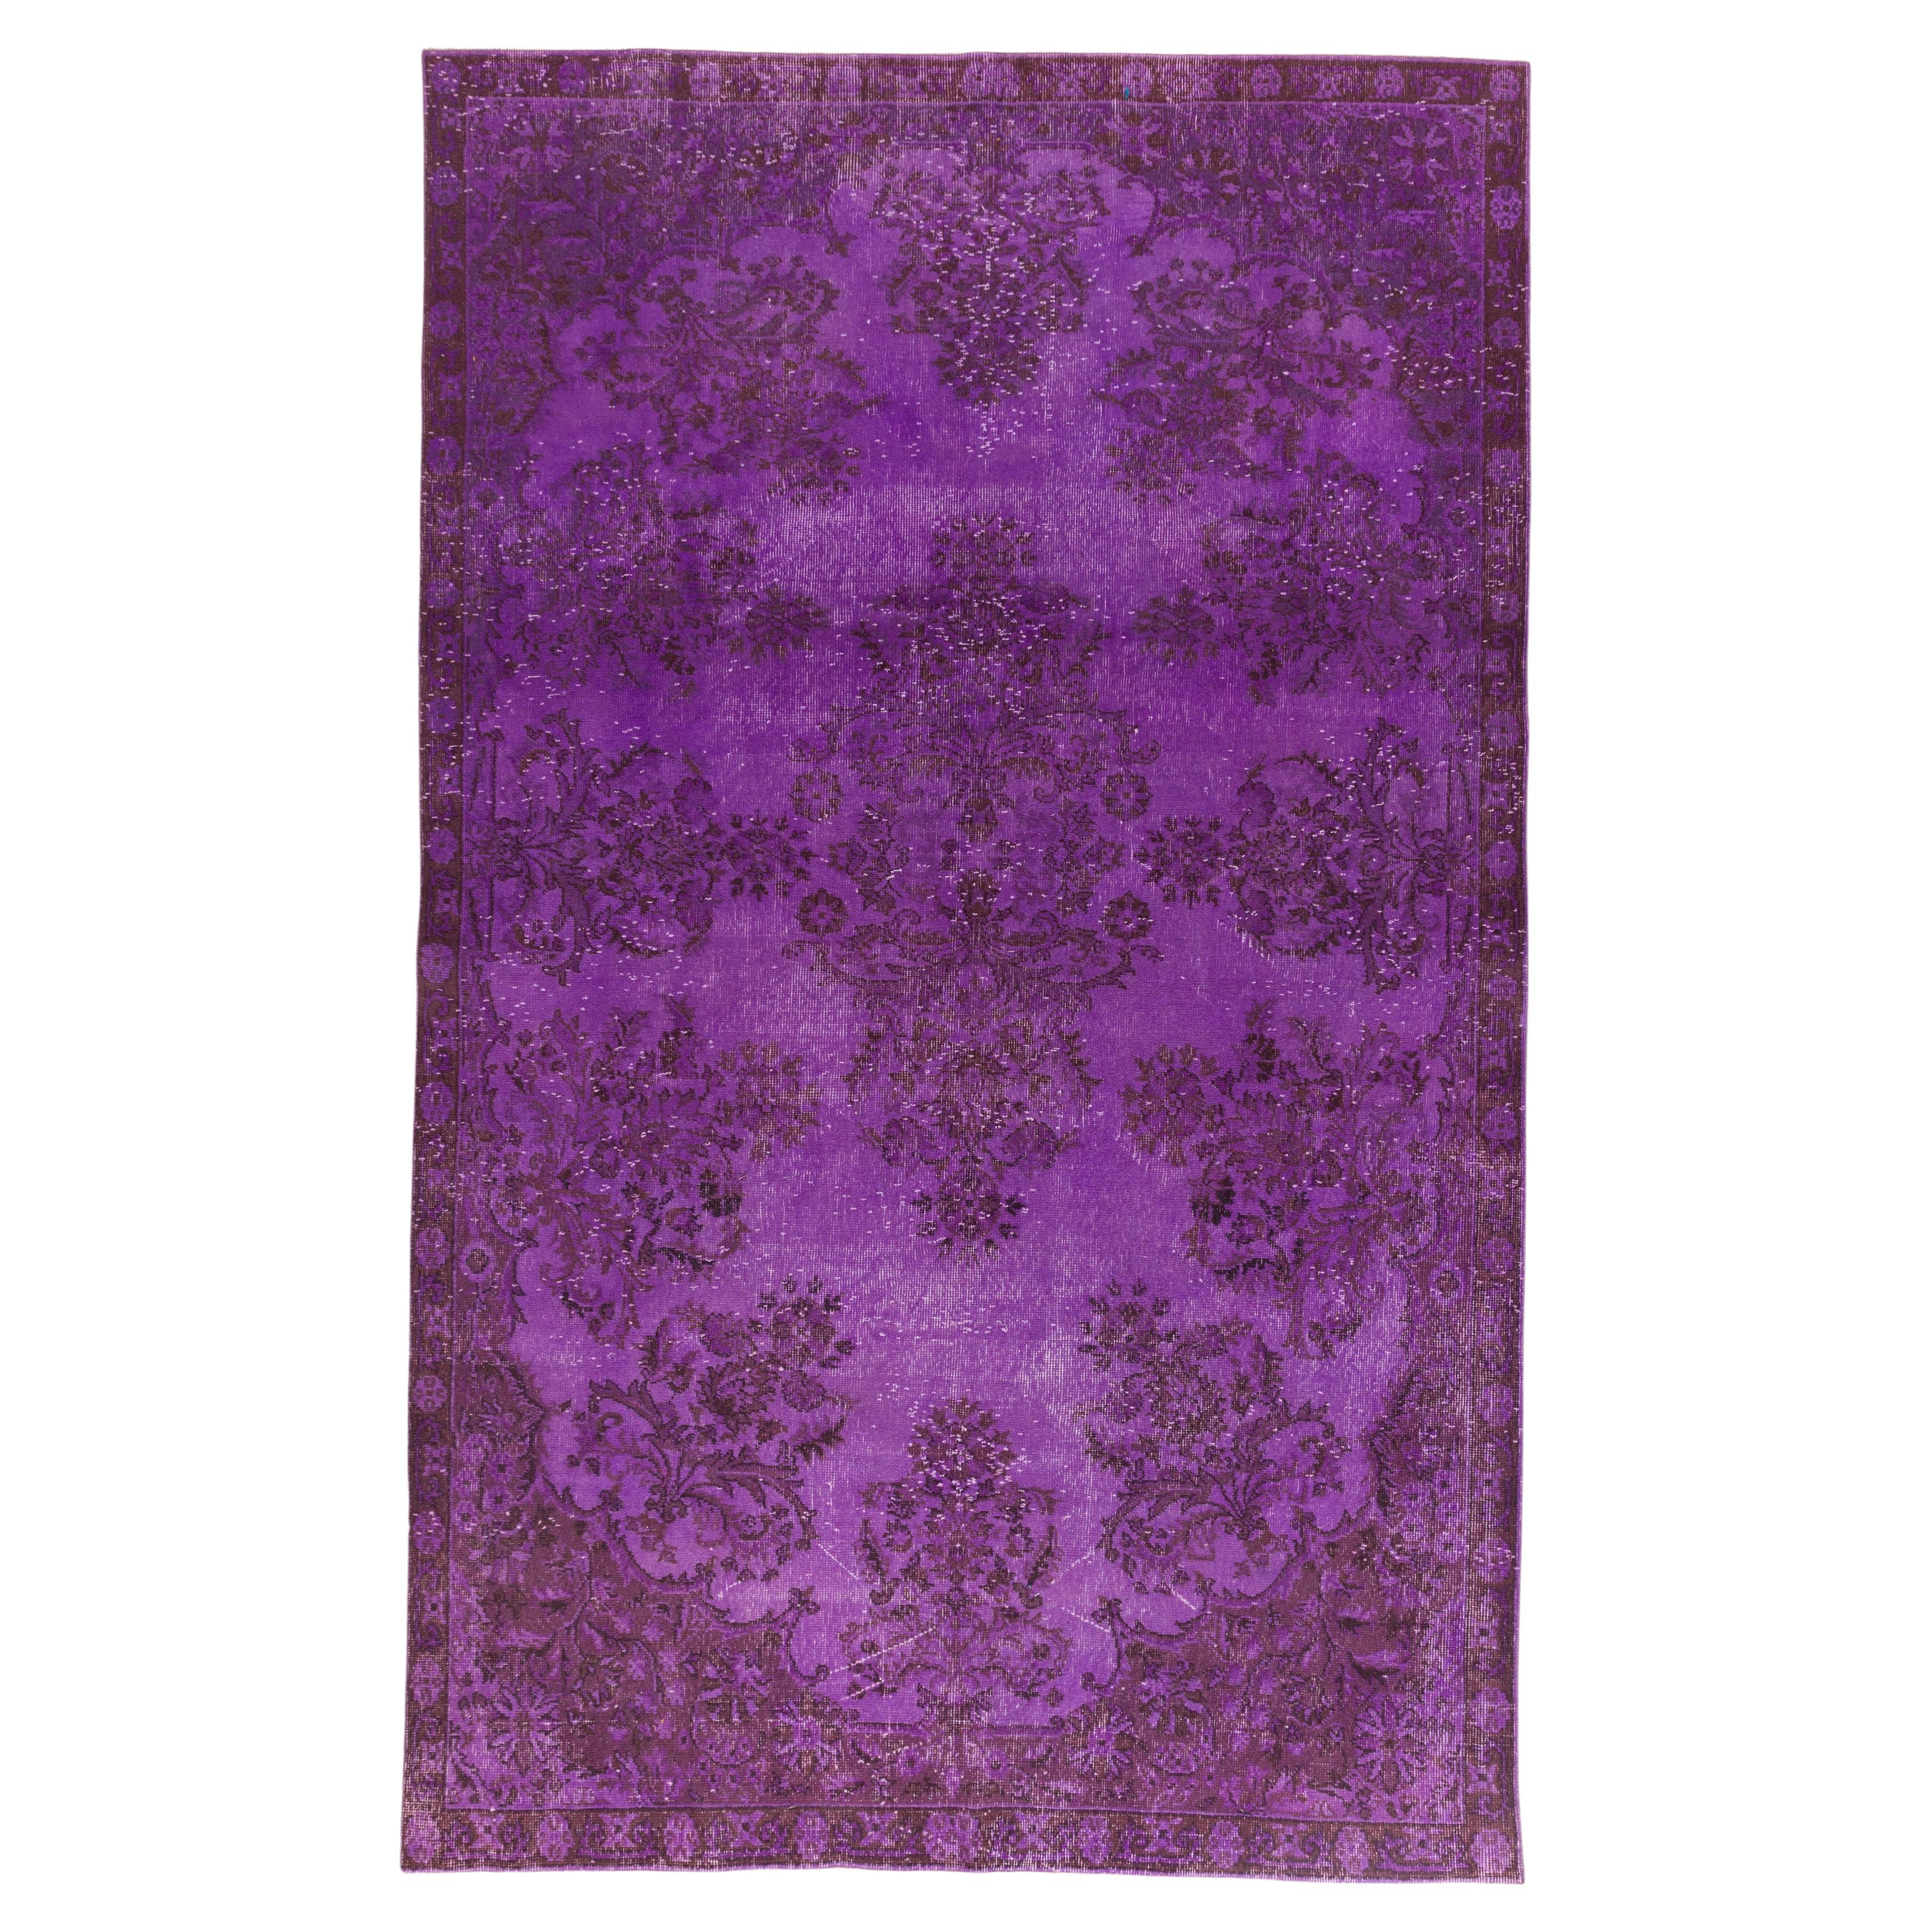 6.2x10.2 Ft Handmade Turkish Rug in Purple. Floral Garden Design Wool Carpet